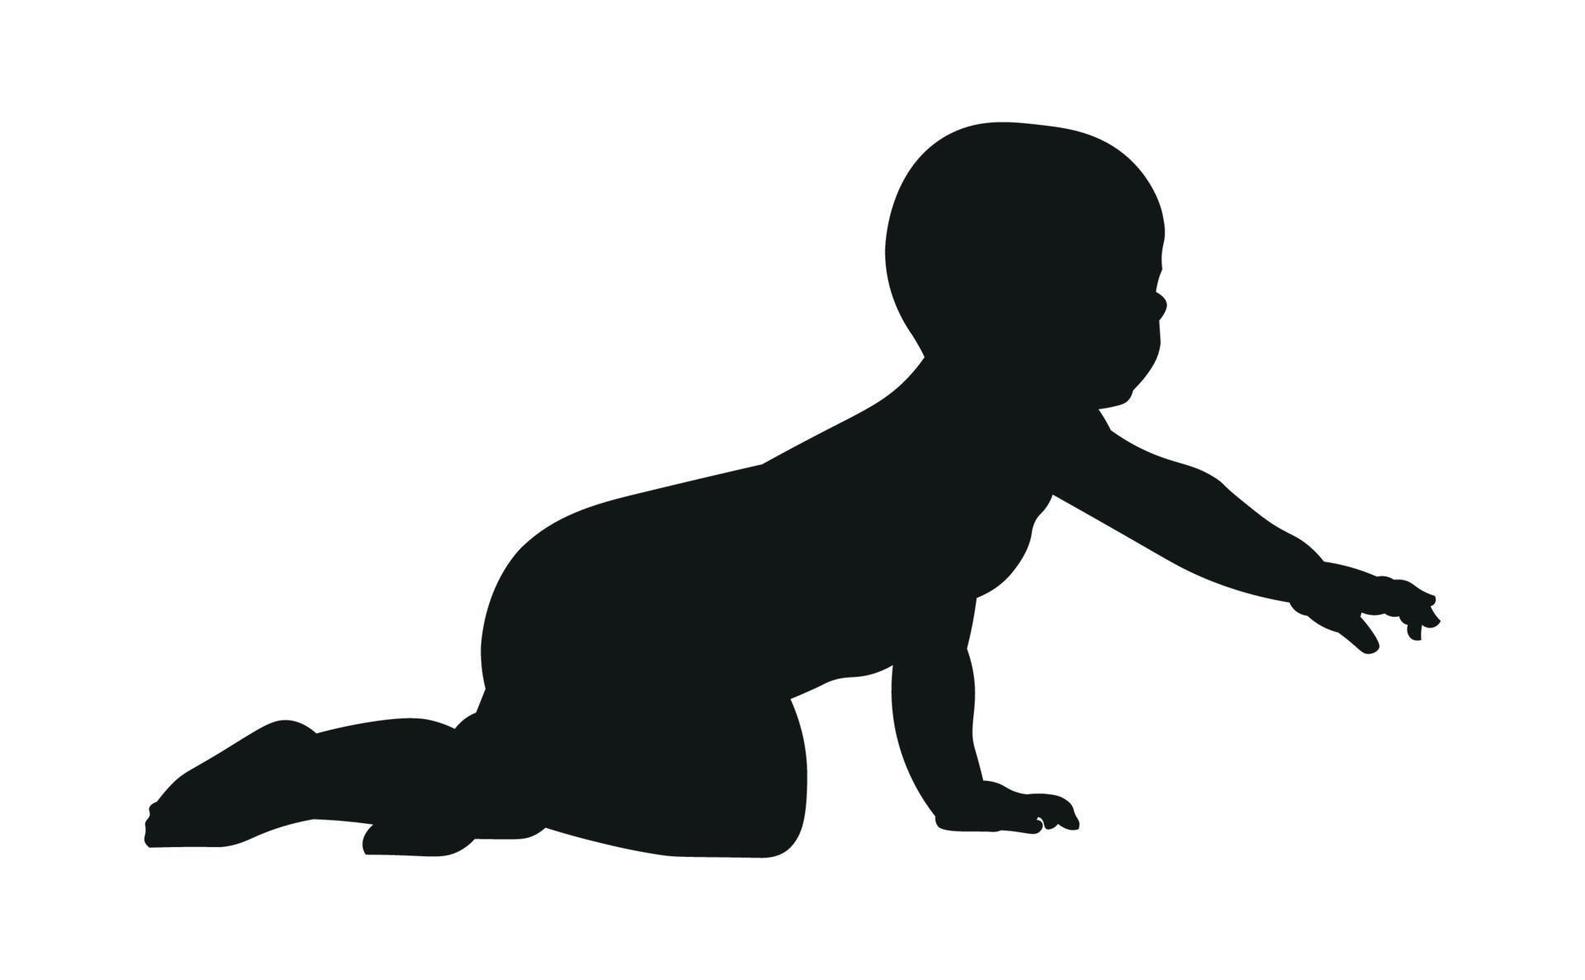 silhueta de um bebê em uma pose que rasteja, fundo branco. bebê preto. vetor